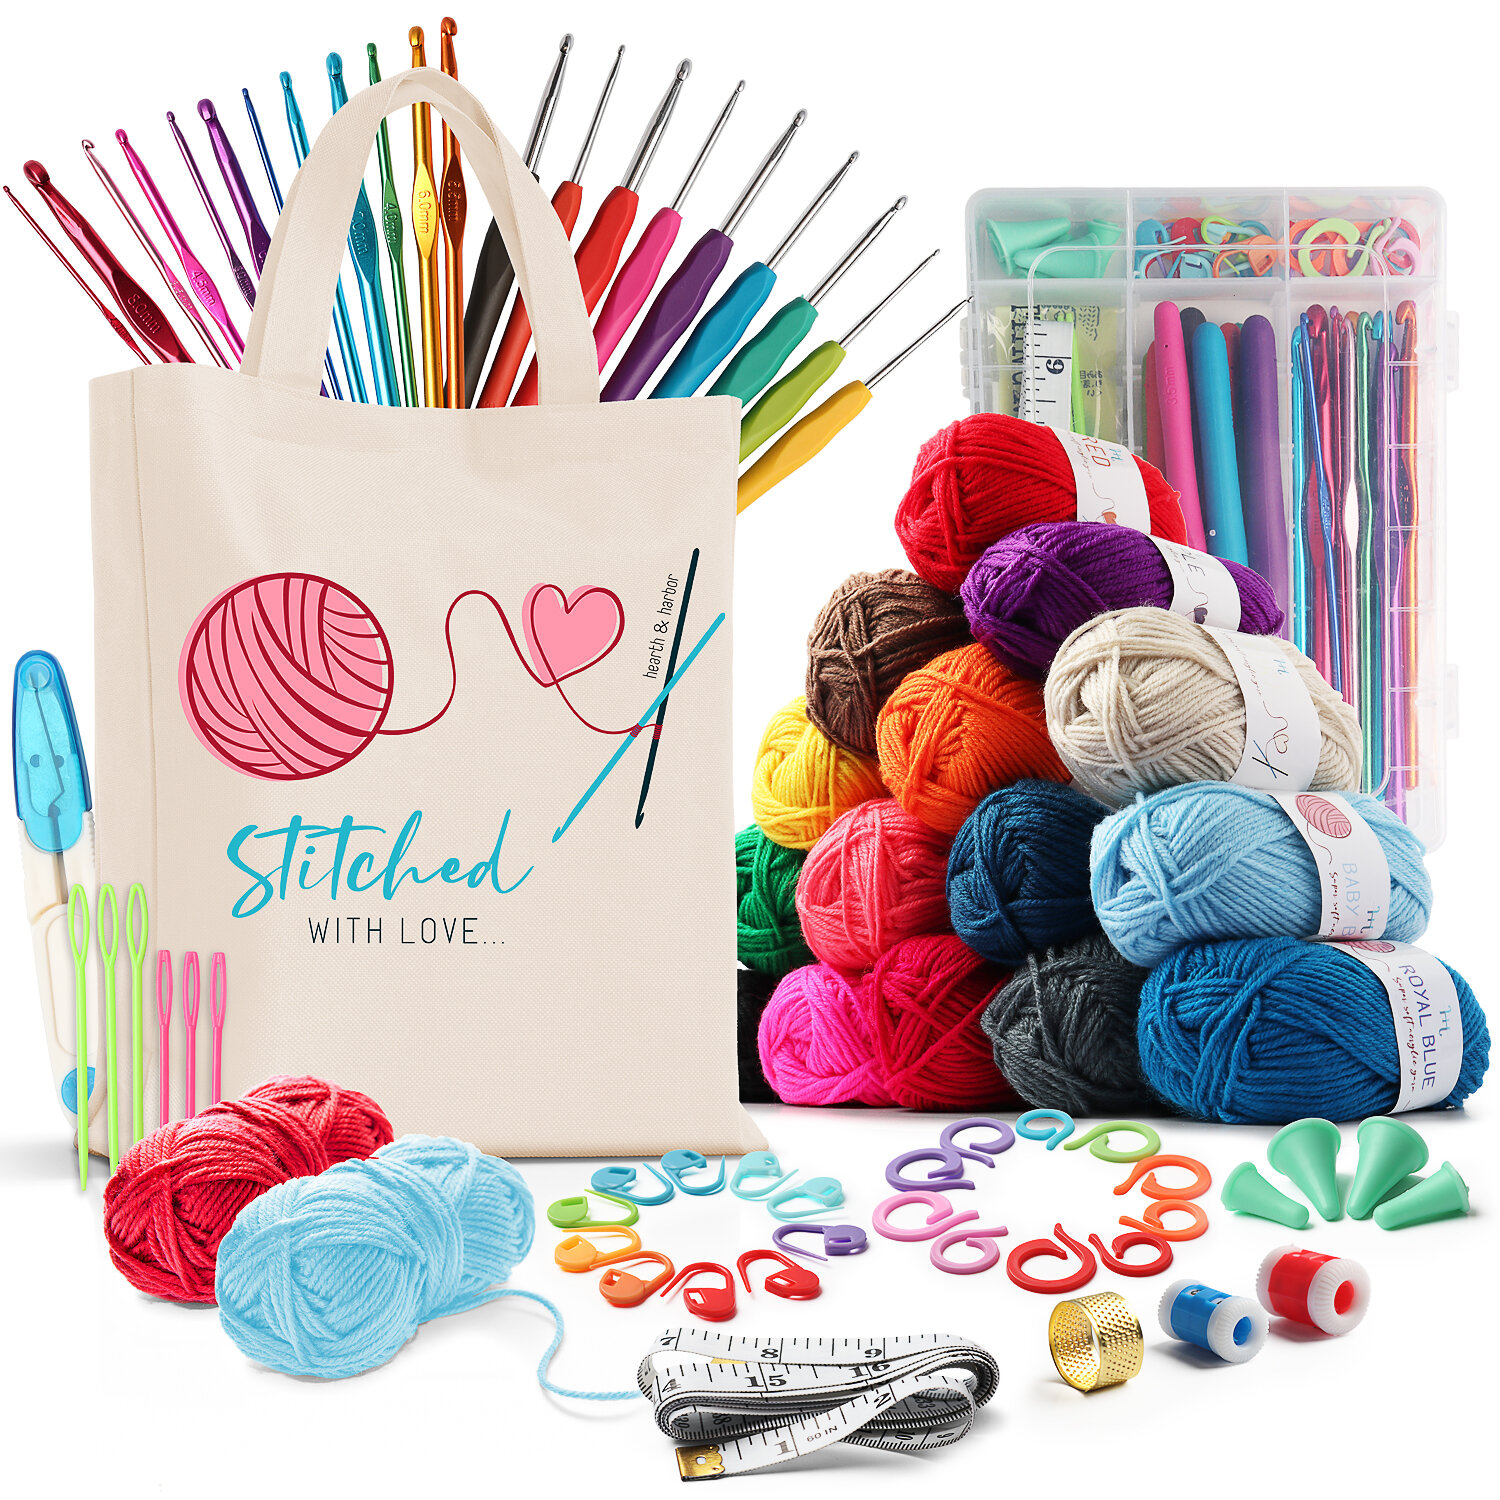 Hearth & Harbor Mini Crochet Set Kit With Yarn And Crochet Hook Set (68pc)  